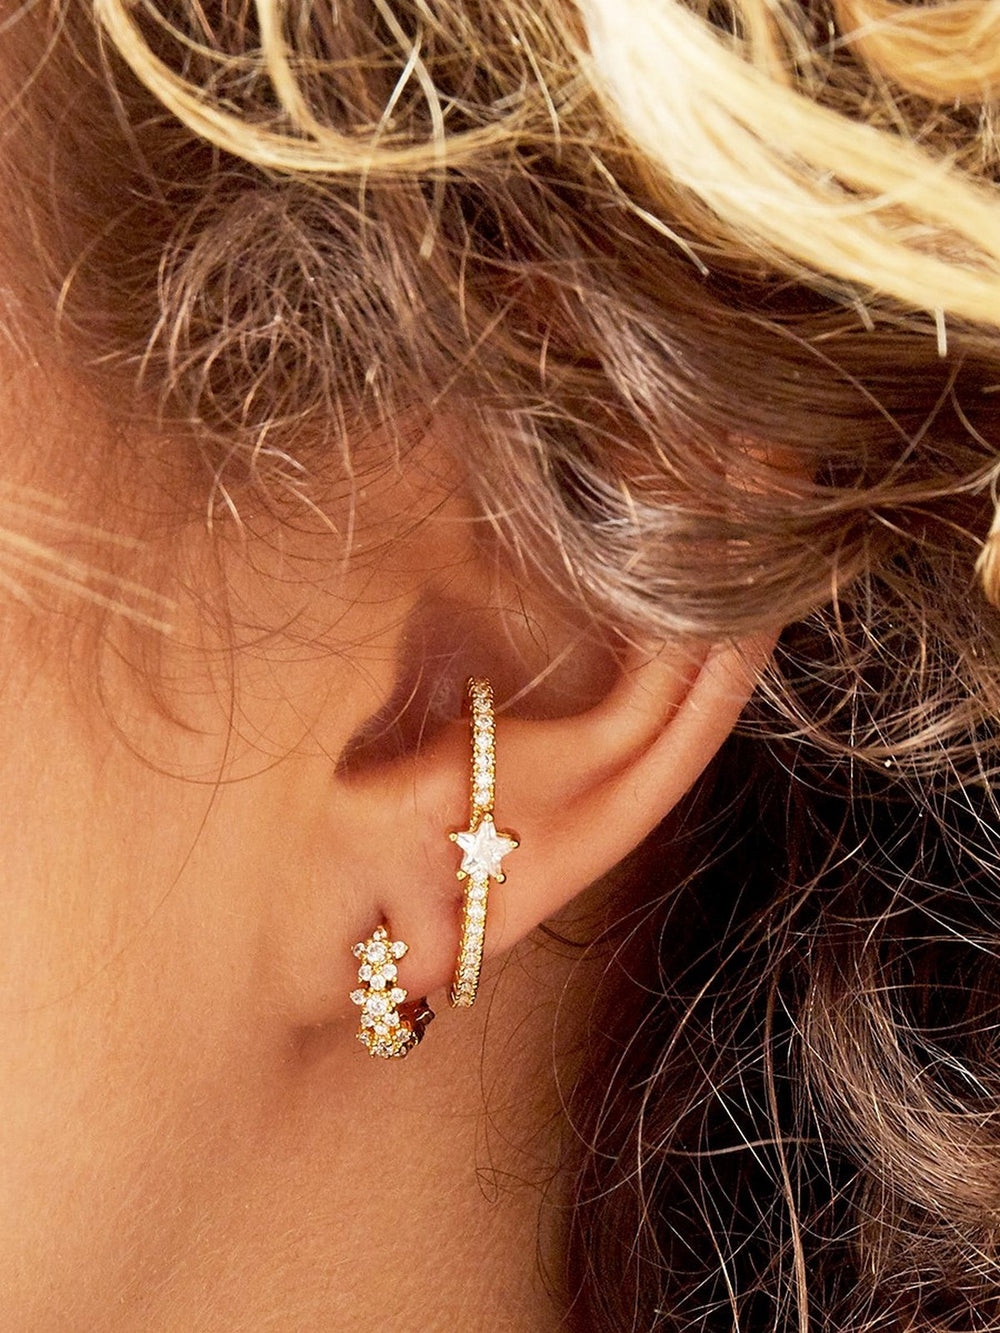 Earrings Diamonds Gold